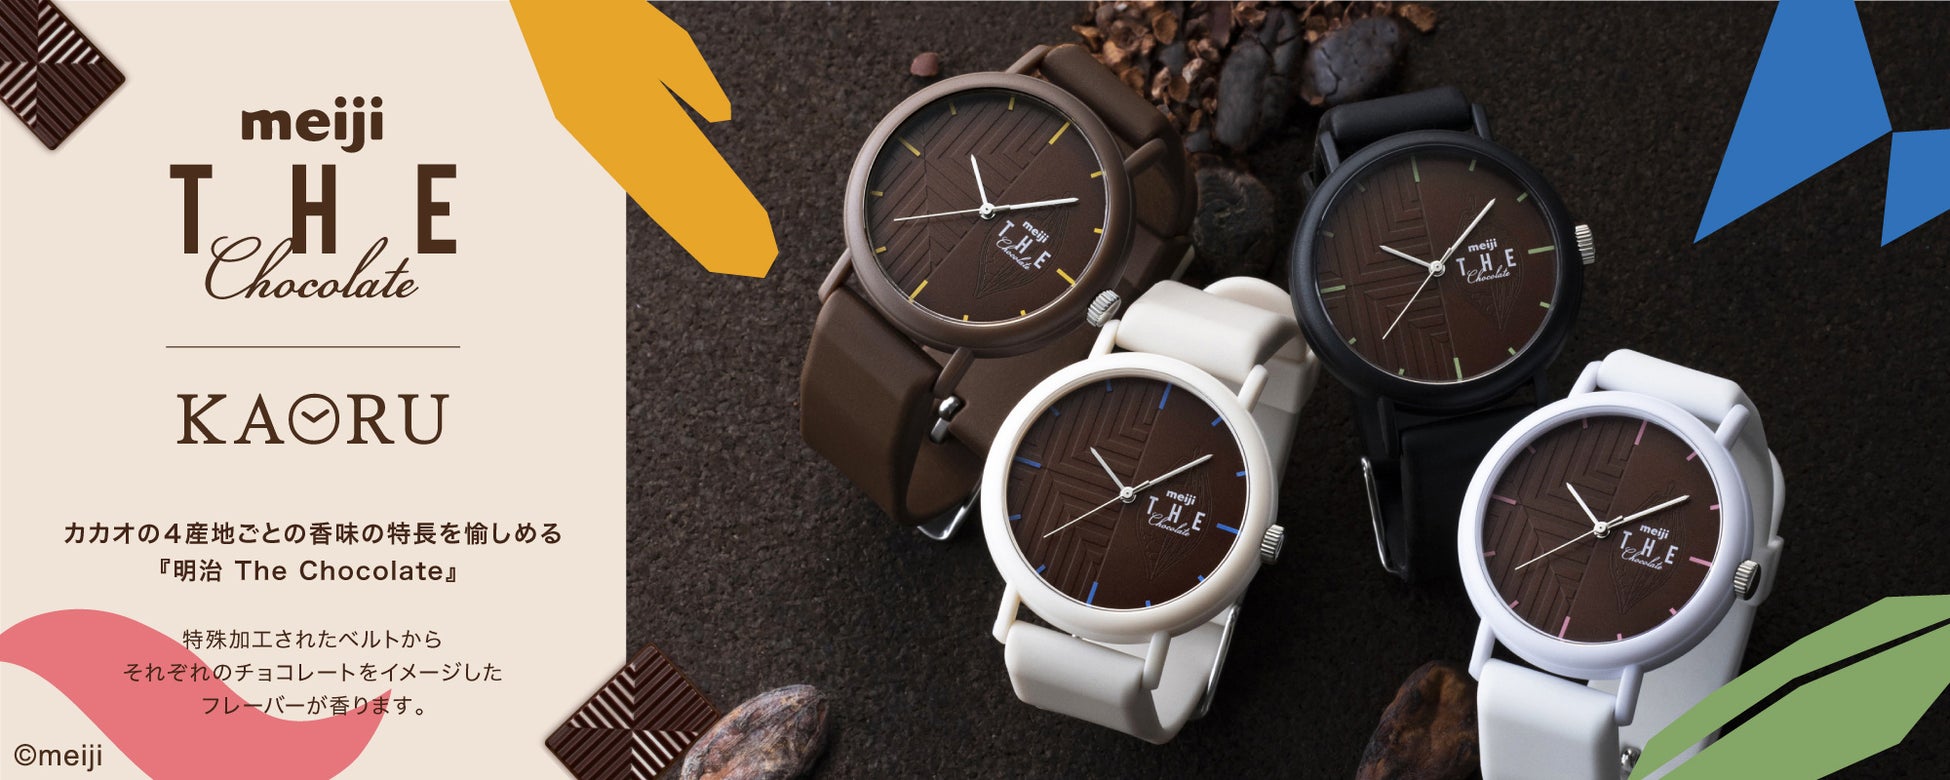 「明治 THE Chocolate」と腕時計ブランド「KAORU」のコラボレーションウォッチが登場！